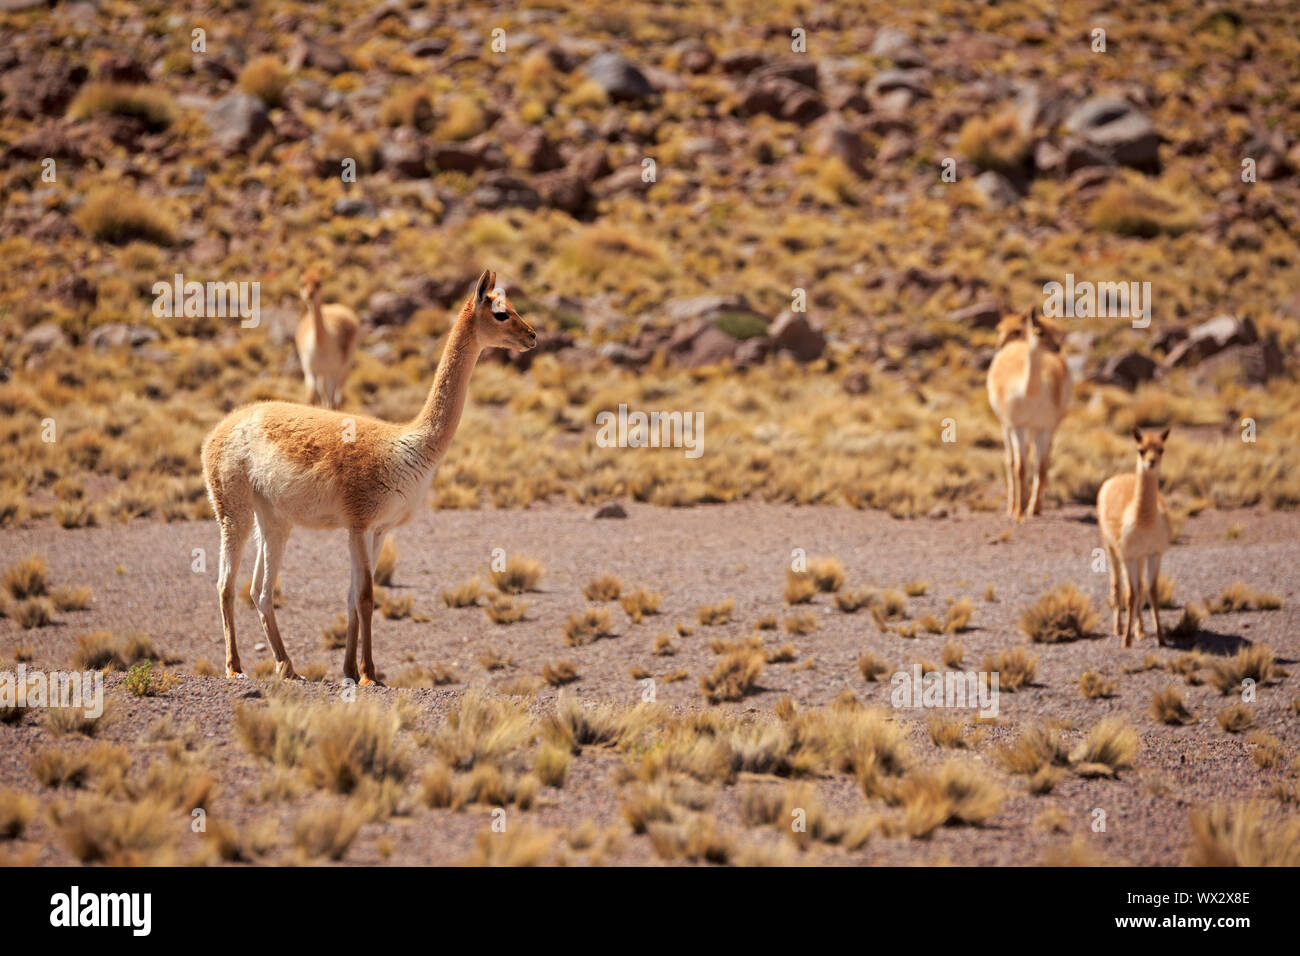 La recherche de nourriture dans les guanacos le désert d'Atacama au Chili Banque D'Images